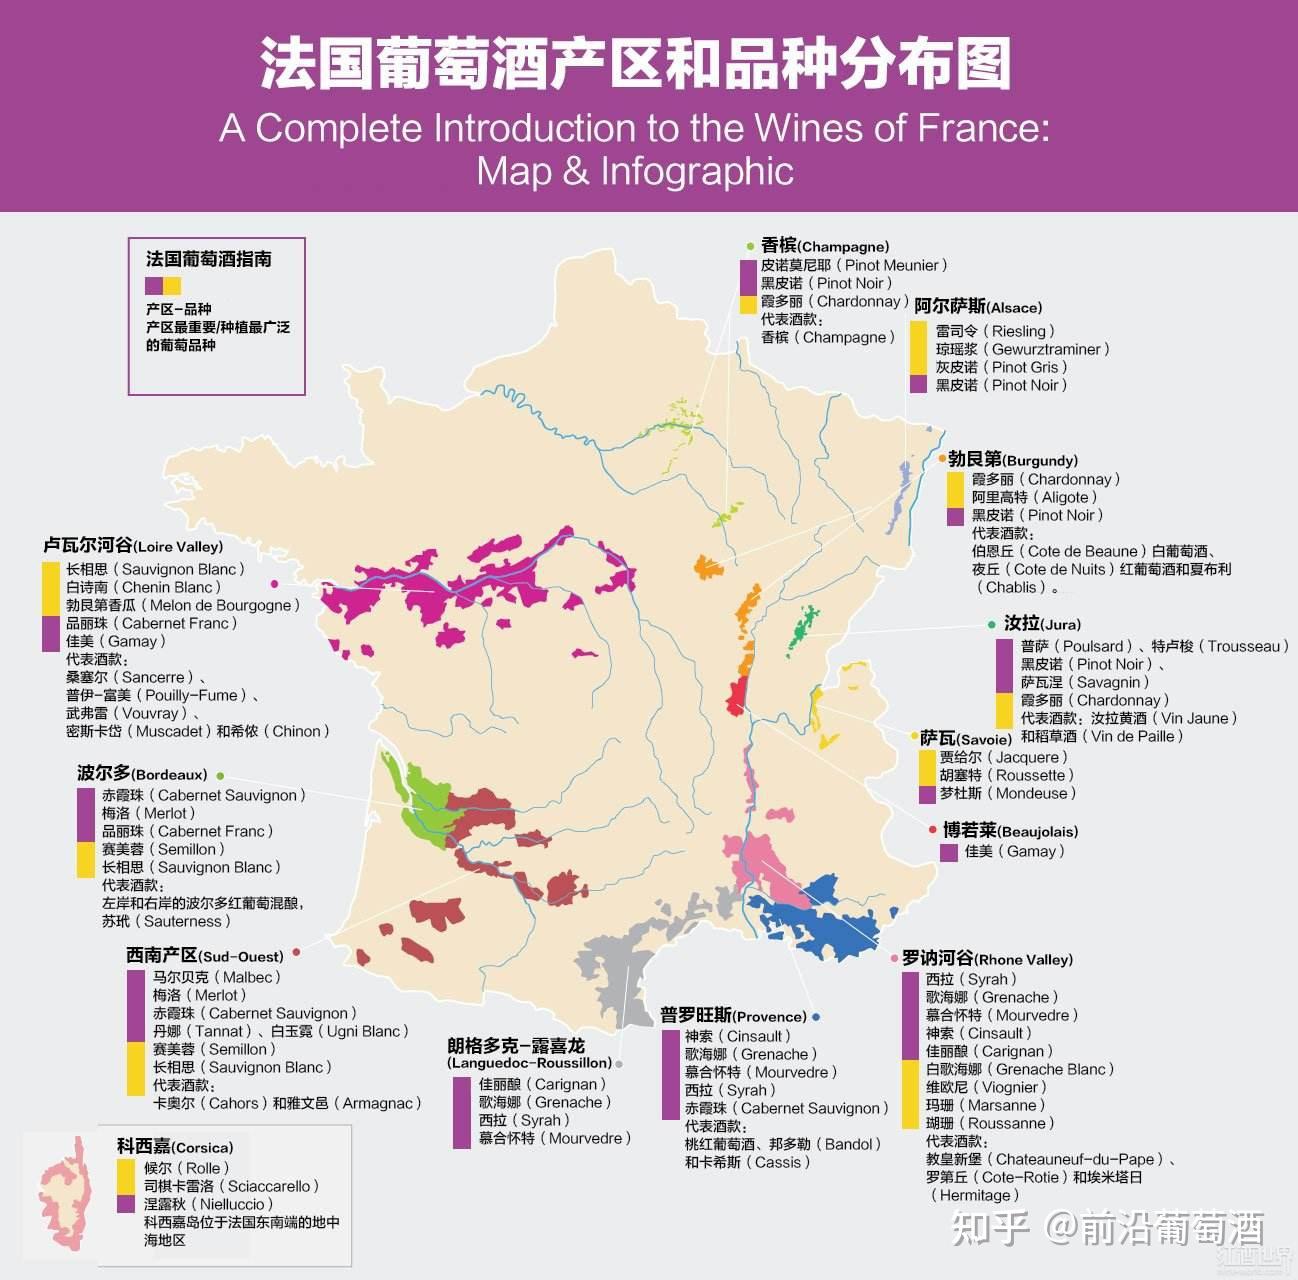 法国的葡萄酒产区总览法国十大葡萄酒酒区地图